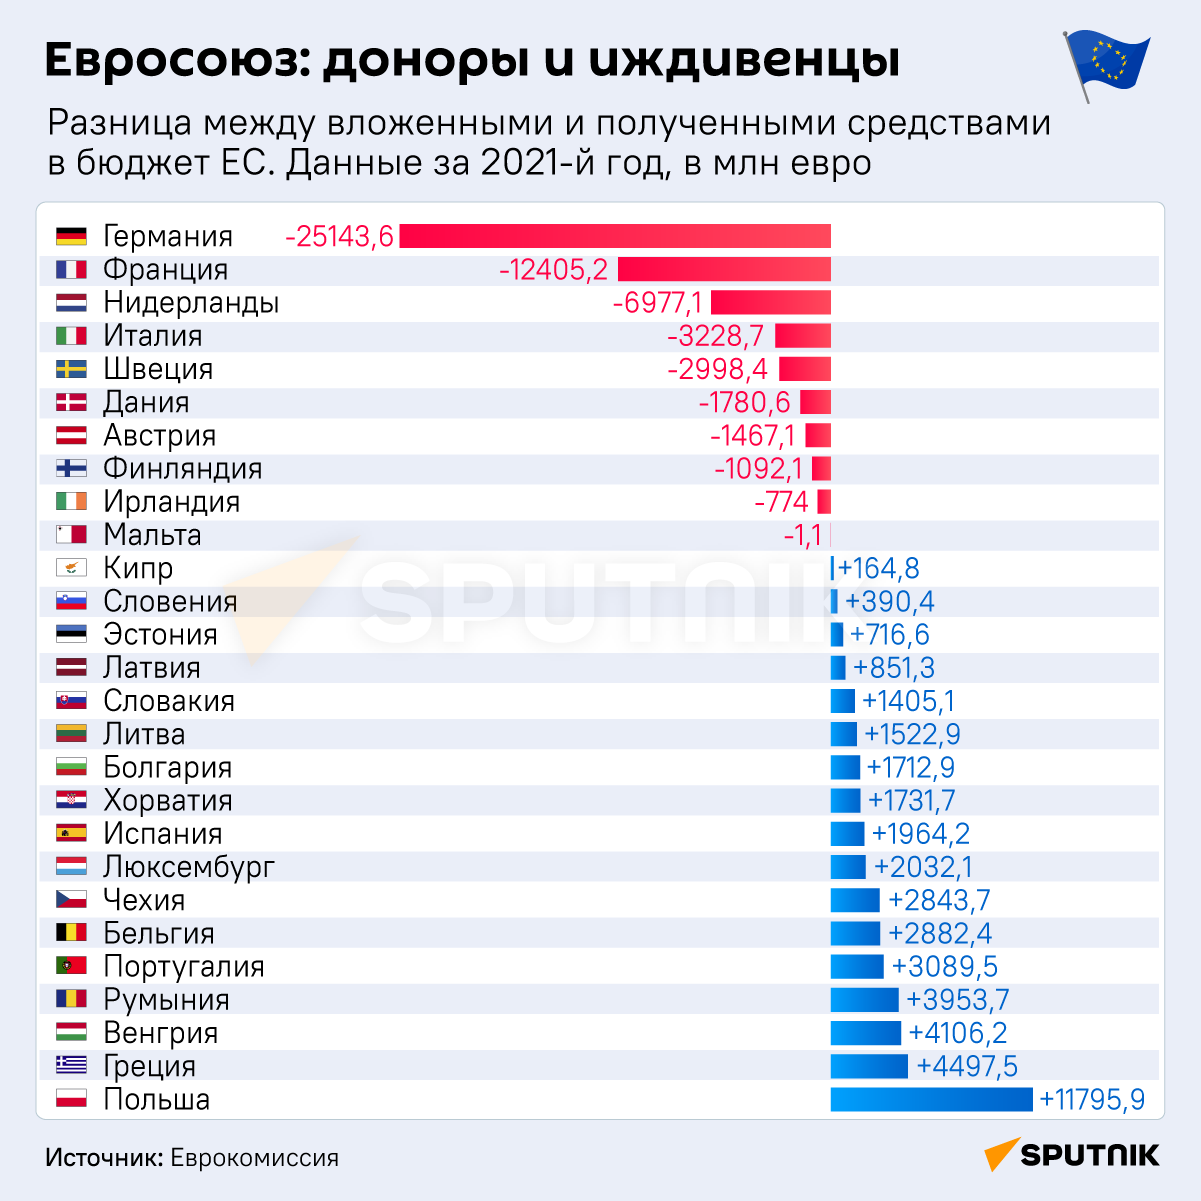 Евросоюз: доноры и иждевенцы инфографика - Sputnik Узбекистан